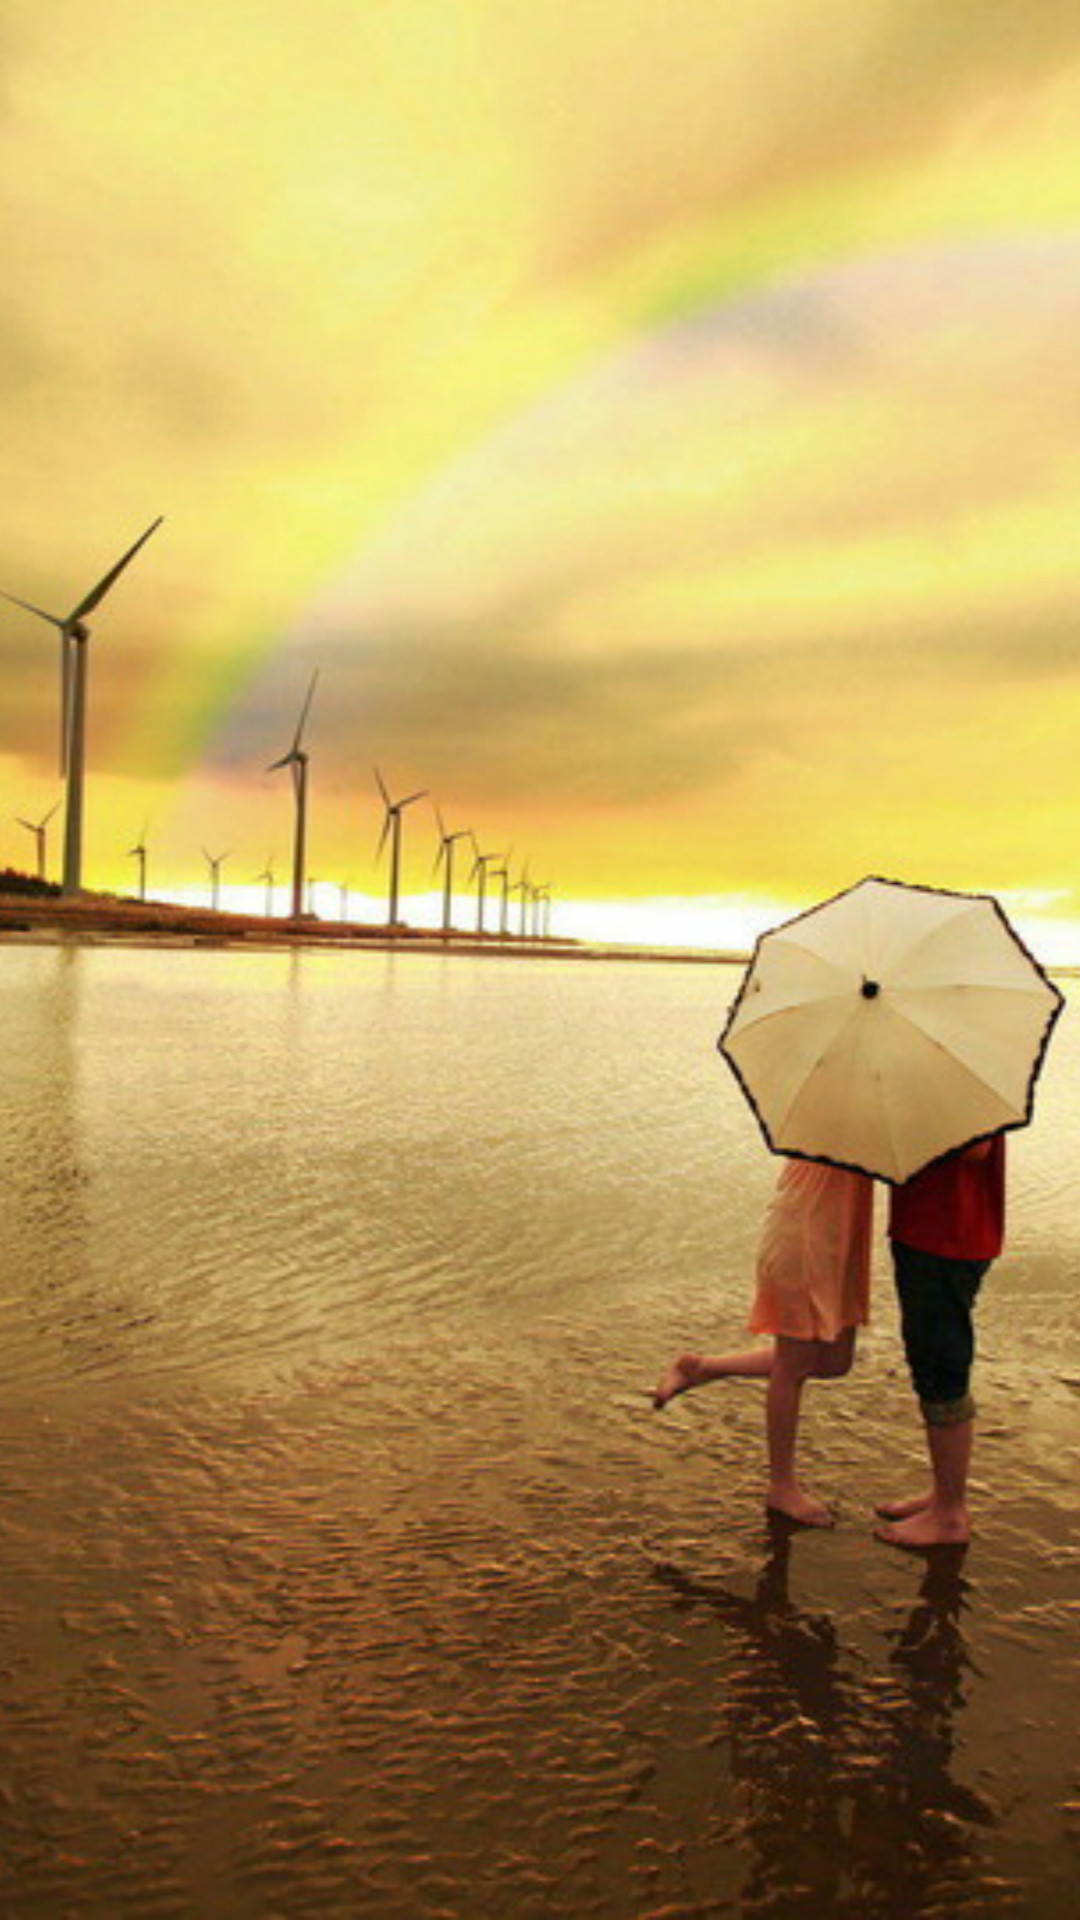 lock screen wallpaper hd,sky,wind,umbrella,wind farm,vacation